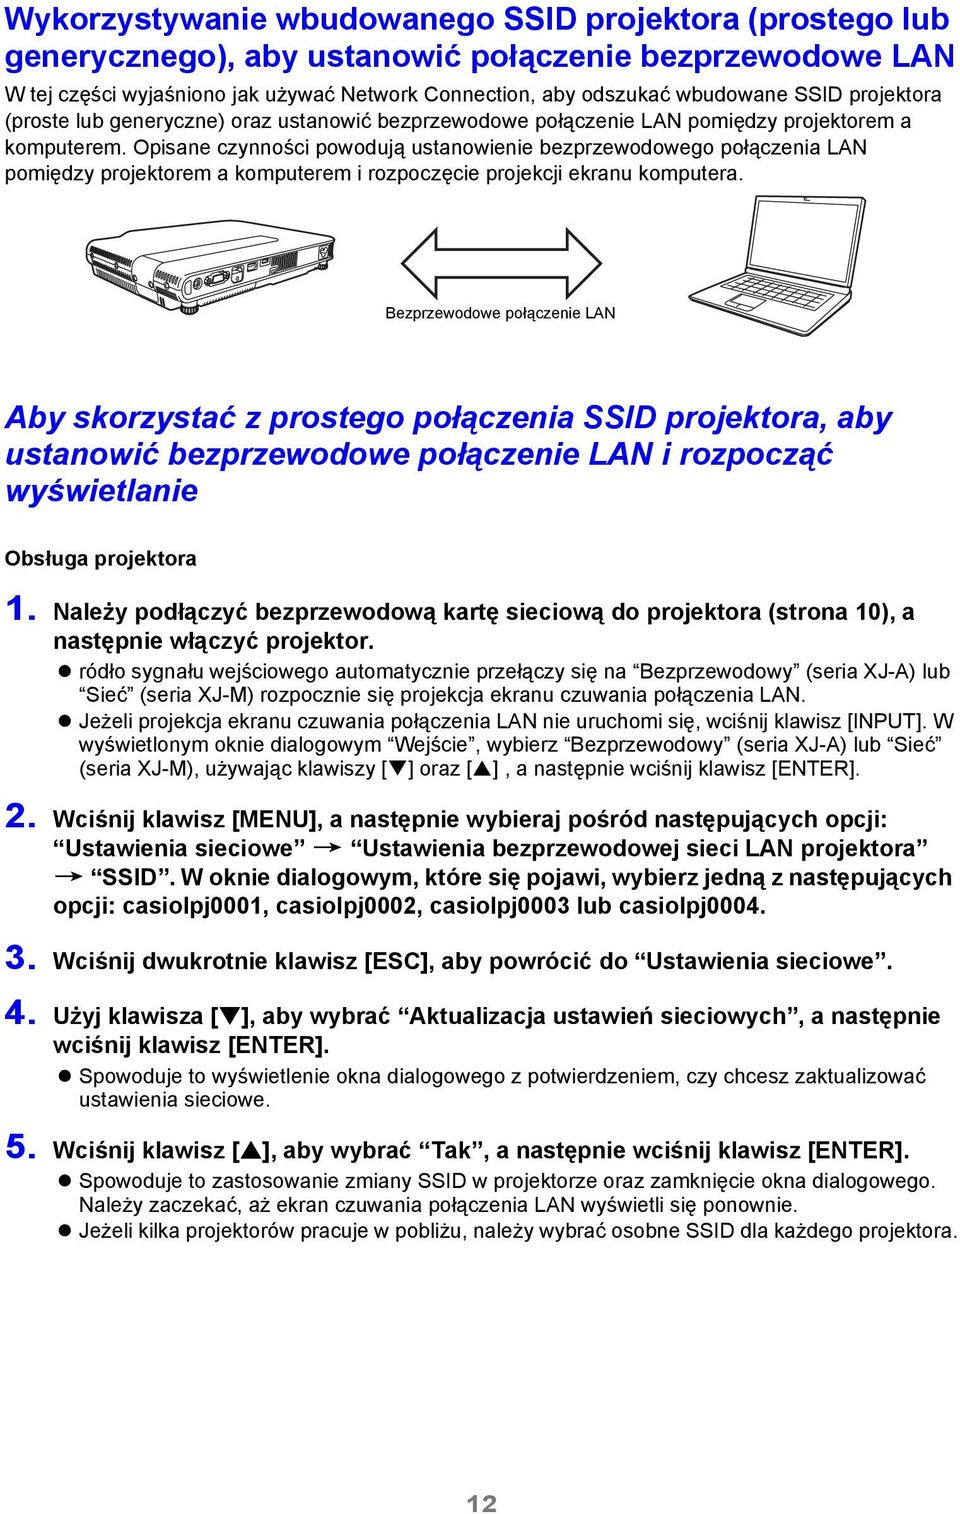 Opisane czynności powodują ustanowienie bezprzewodowego połączenia LAN pomiędzy projektorem a komputerem i rozpoczęcie projekcji ekranu komputera.